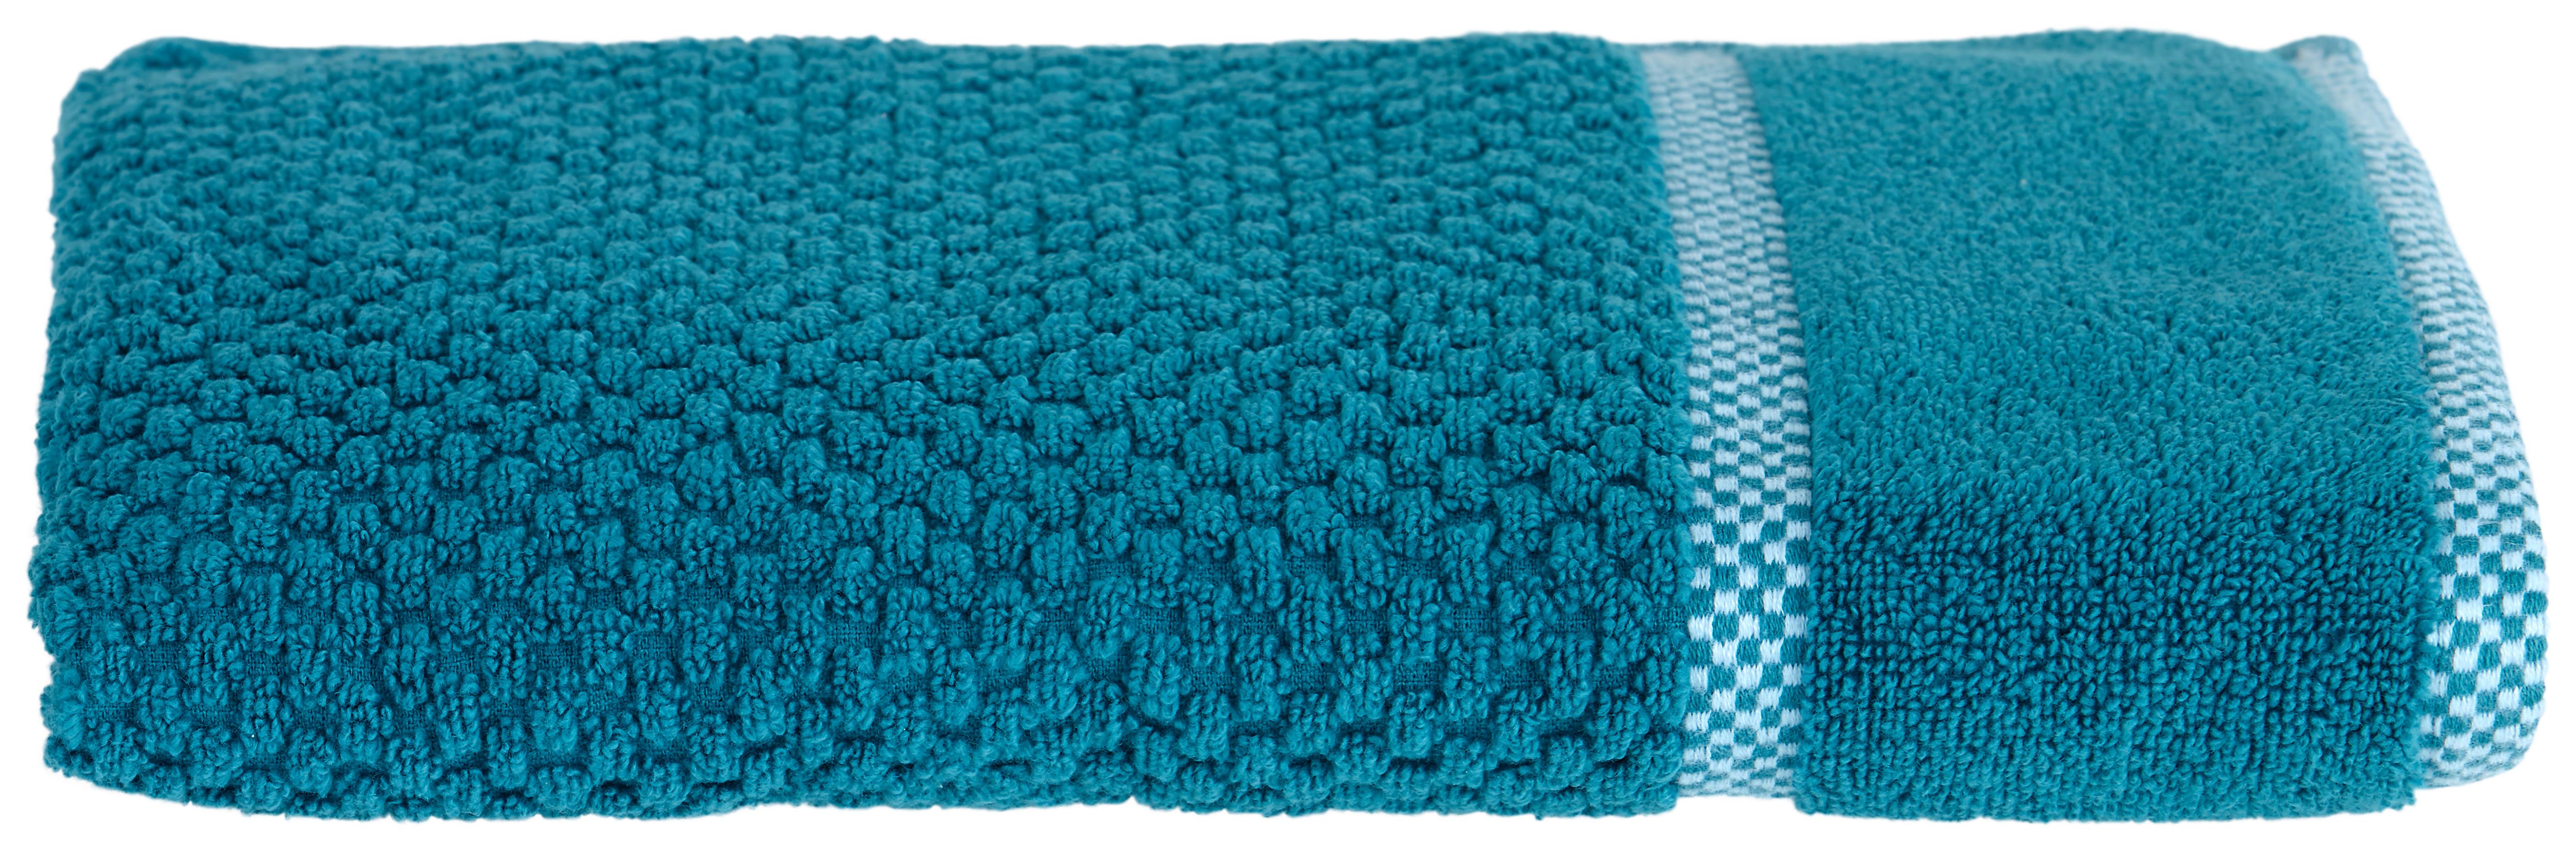 Handtuch in Azurblau aus Baumwolle